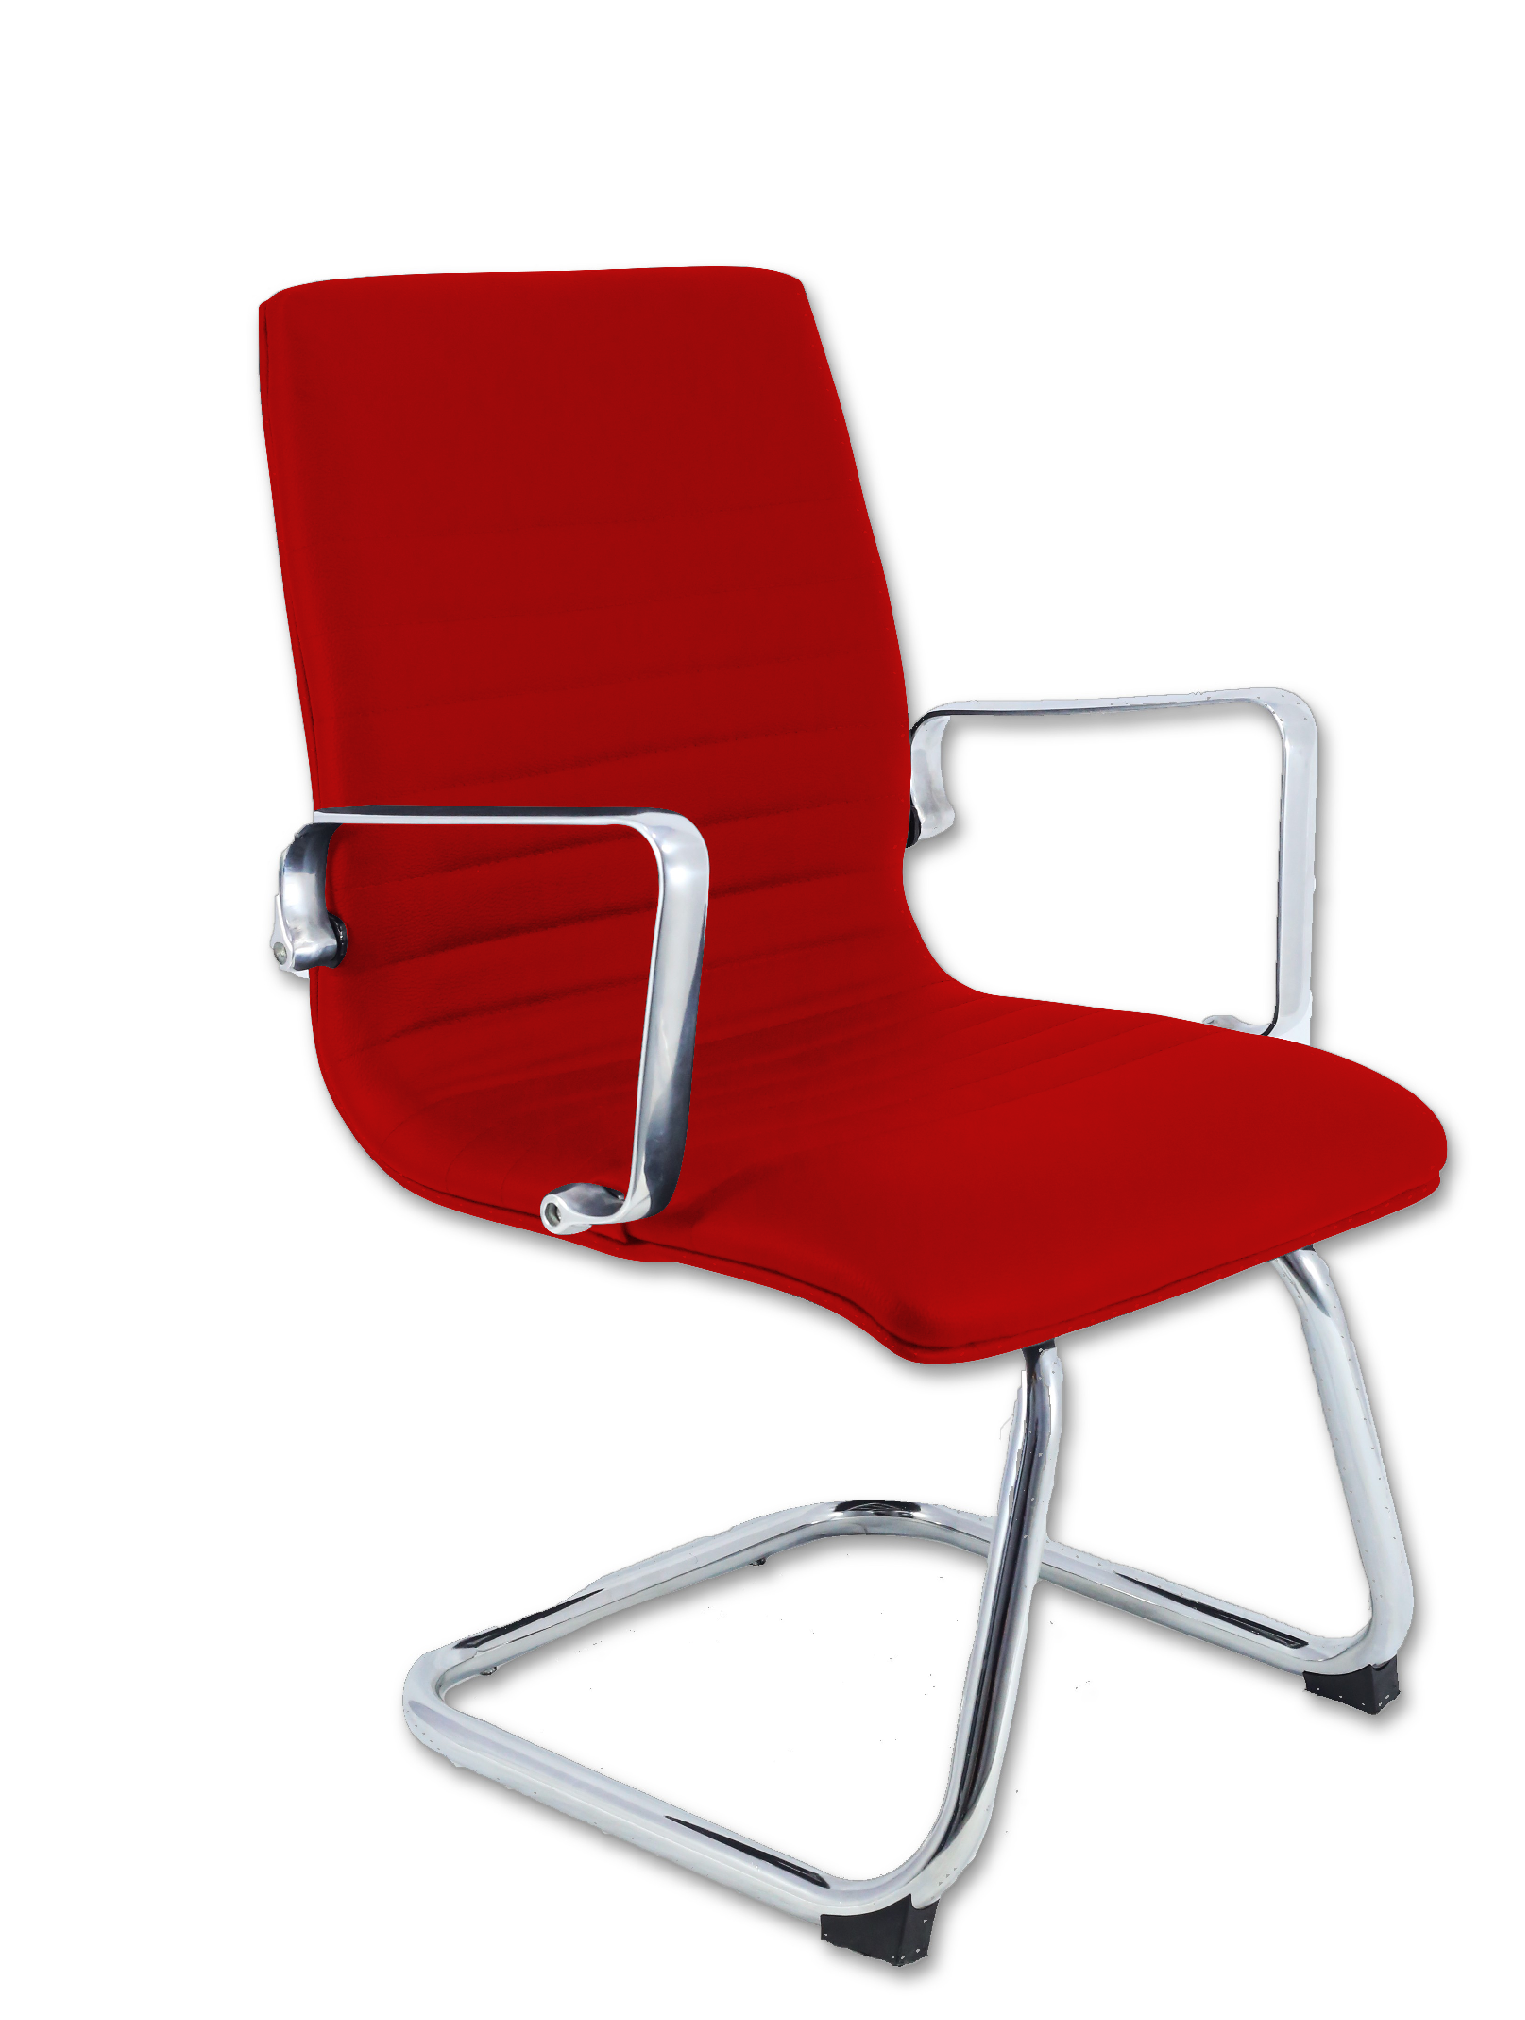 Cadeira Diretor Inspired Eames fixa Couro Sintético Vermelho